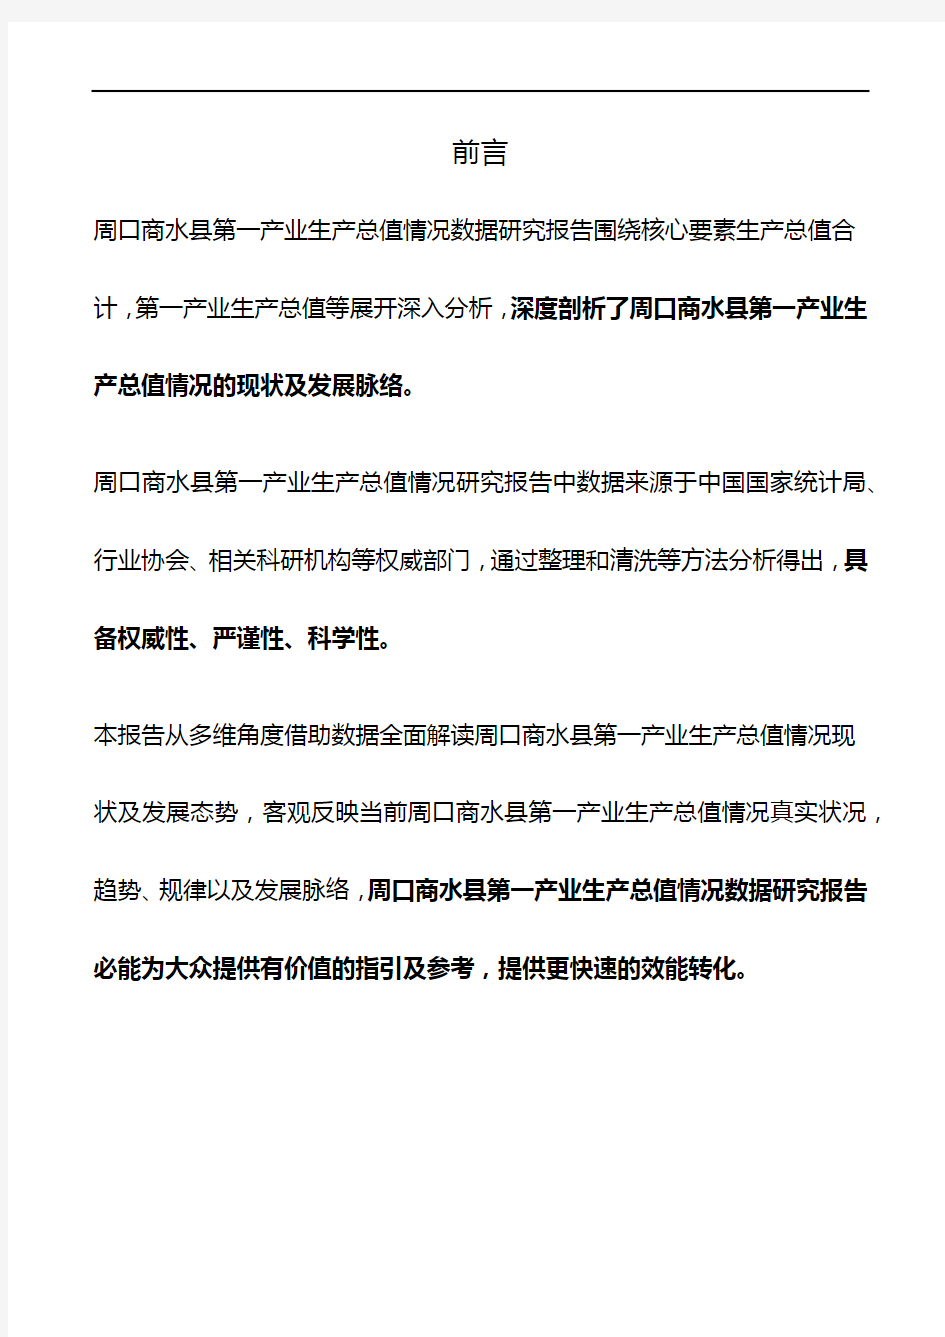 河南省周口商水县第一产业生产总值情况数据研究报告2019版